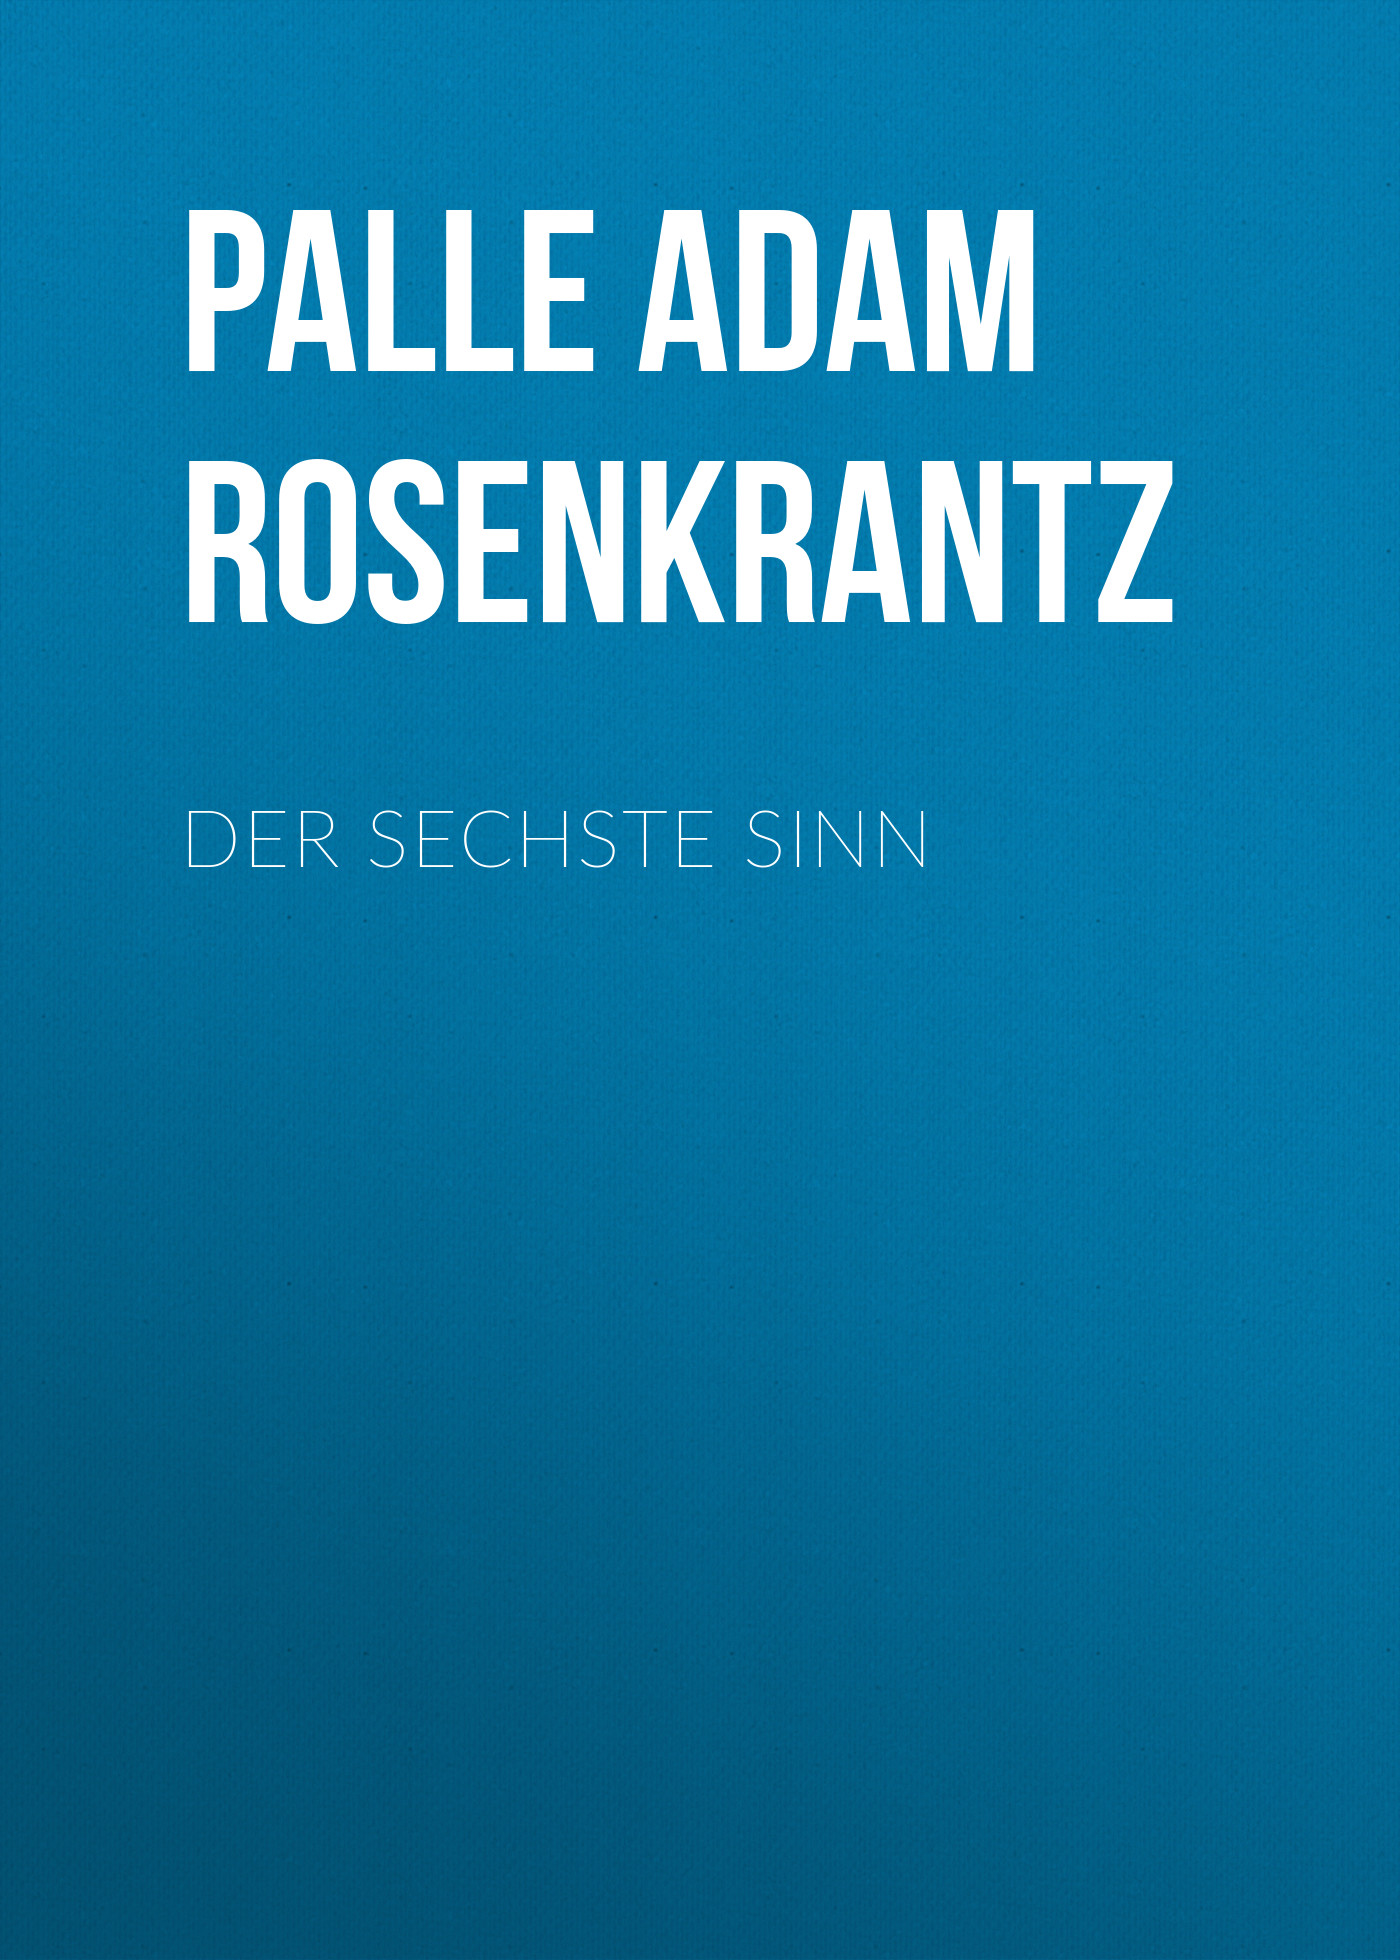 Книга Der sechste Sinn из серии , созданная  , может относится к жанру Зарубежная классика. Стоимость электронной книги Der sechste Sinn с идентификатором 48634076 составляет 0 руб.